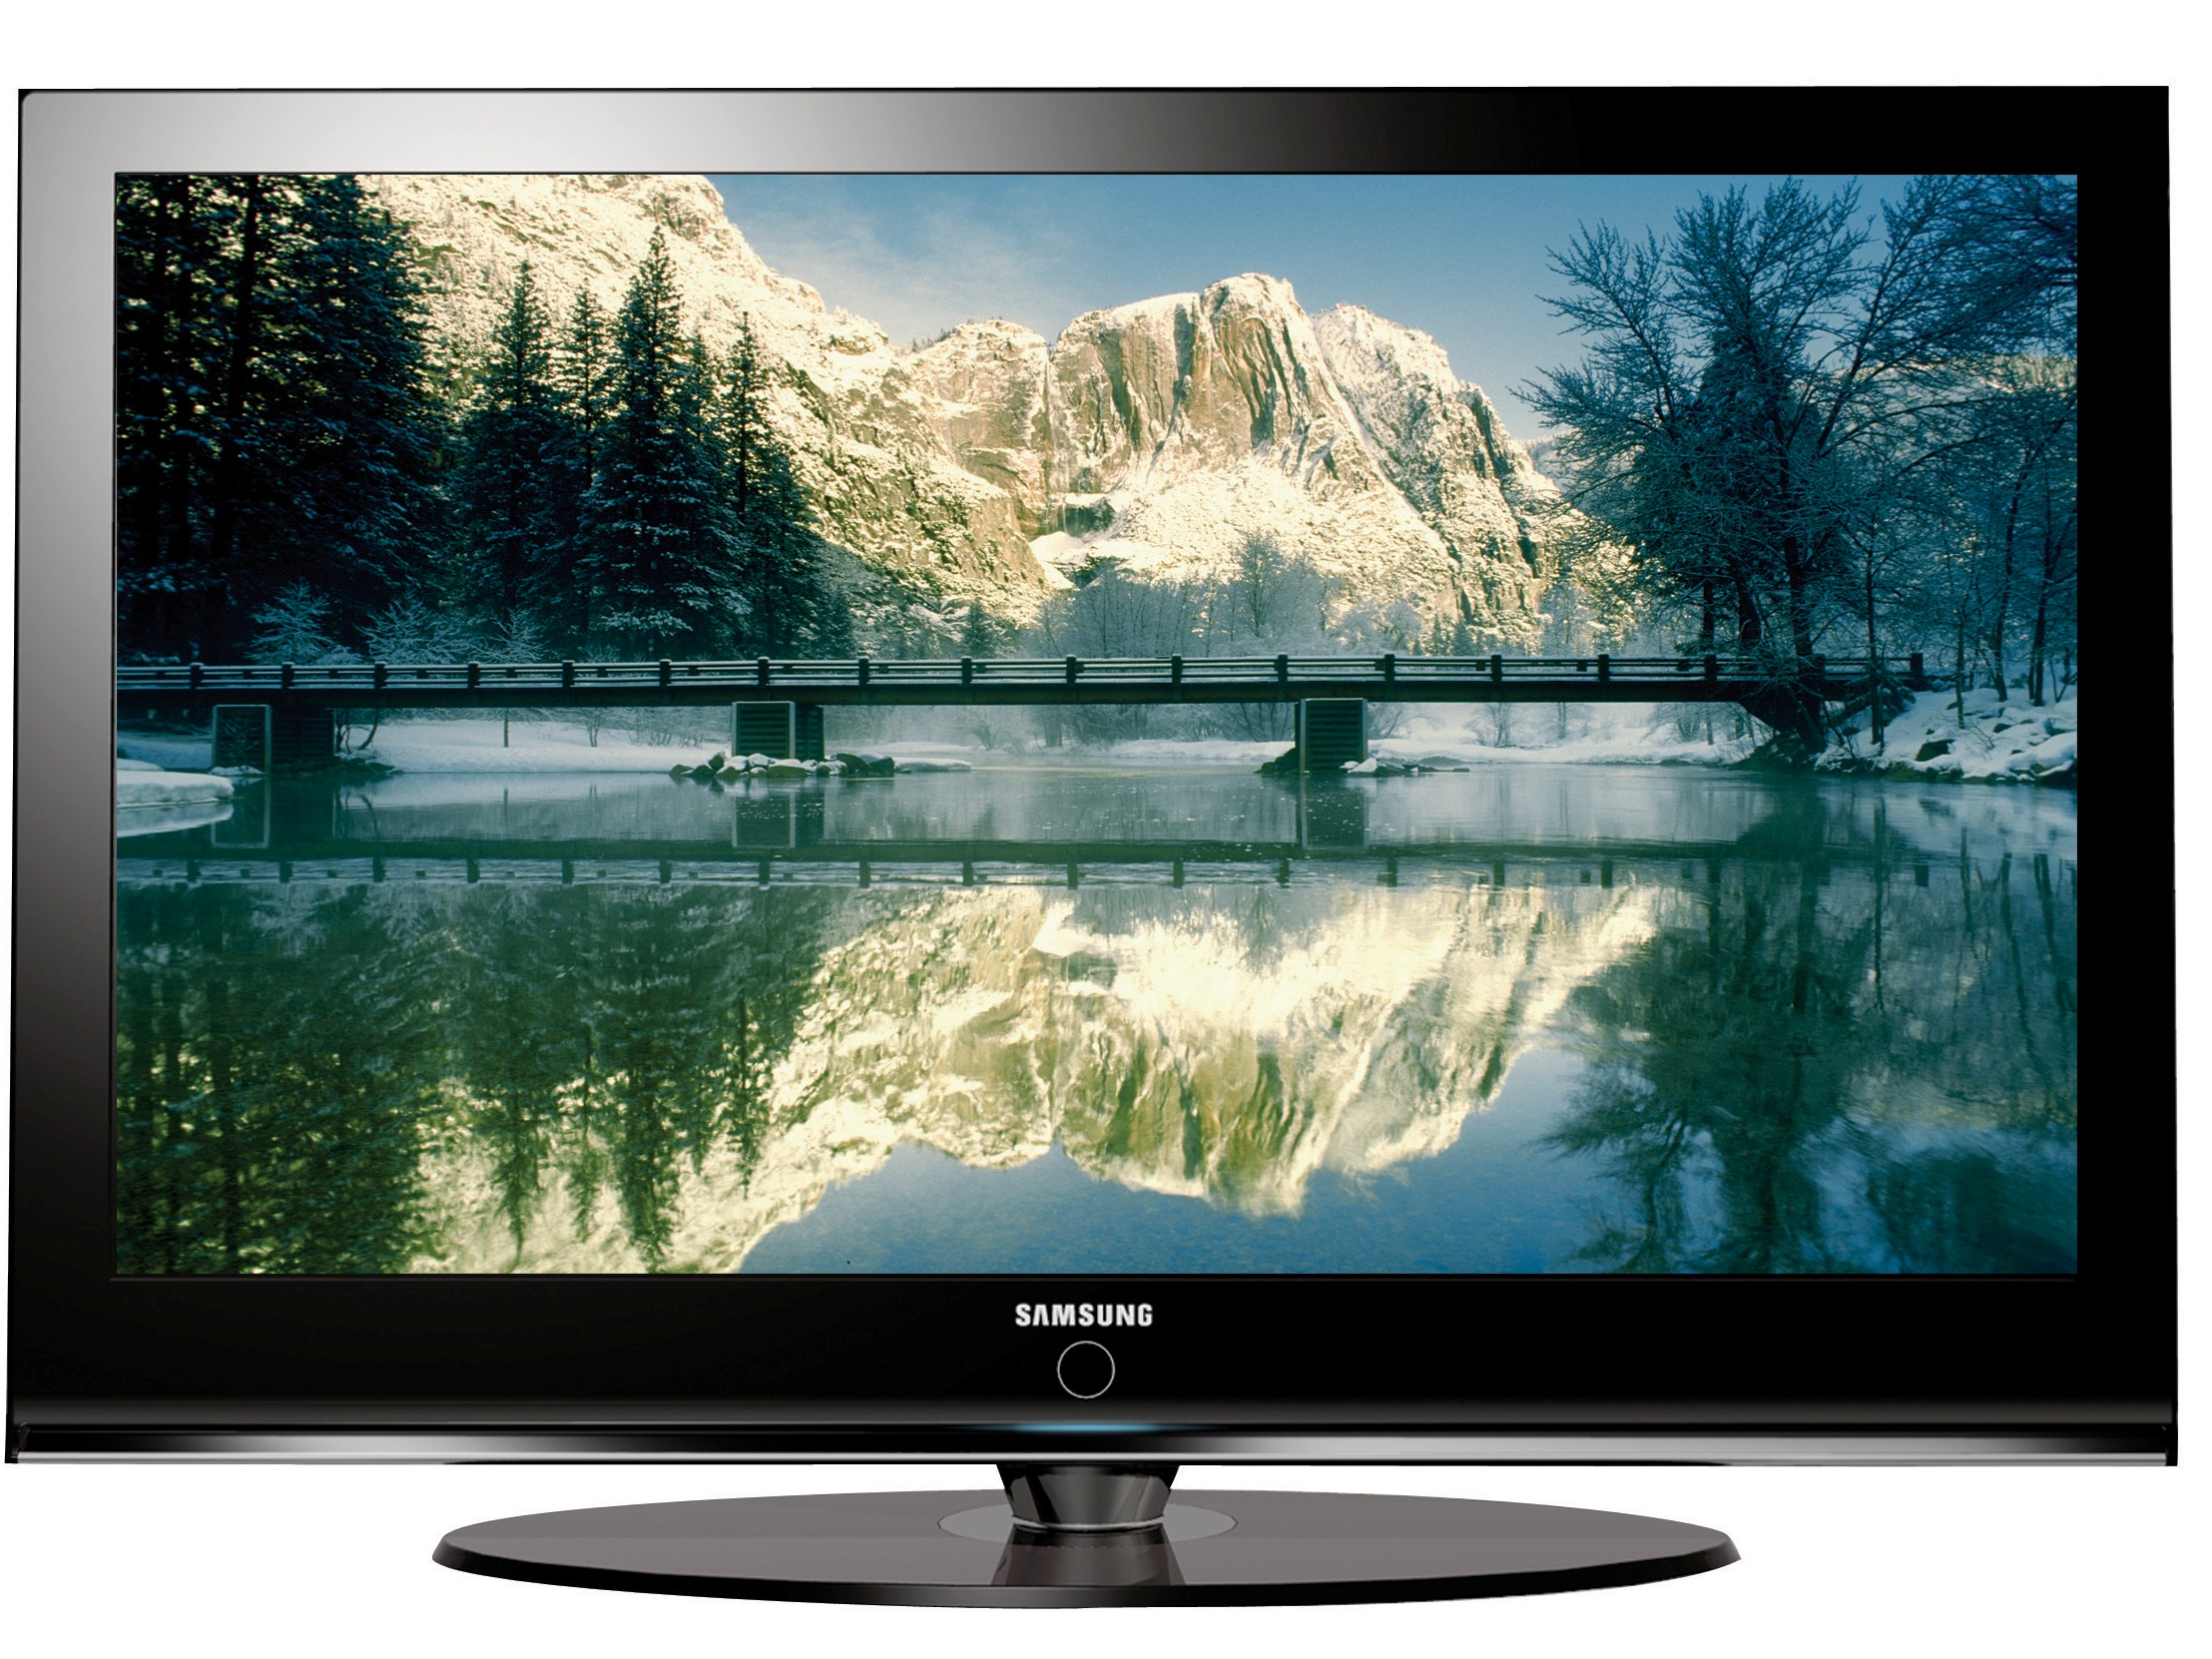 Купить телевизор в дзержинске. Samsung 2007 телевизор плазма. Телевизор Samsung Ln-t5265f. Телевизор самсунг лсд 2007. Samsung le40.